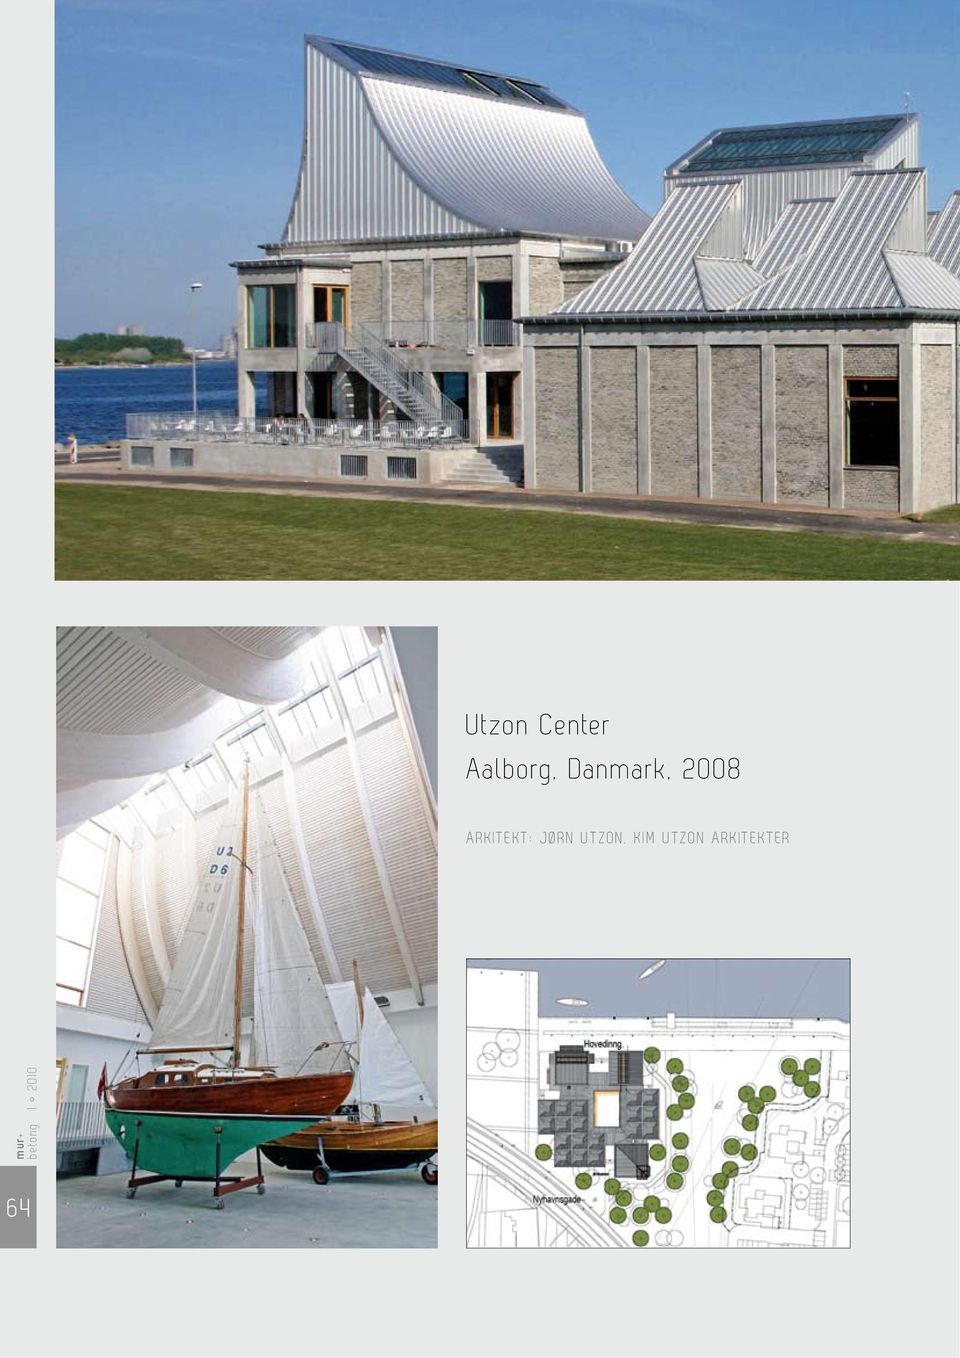 2008 arkitekt: Jørn